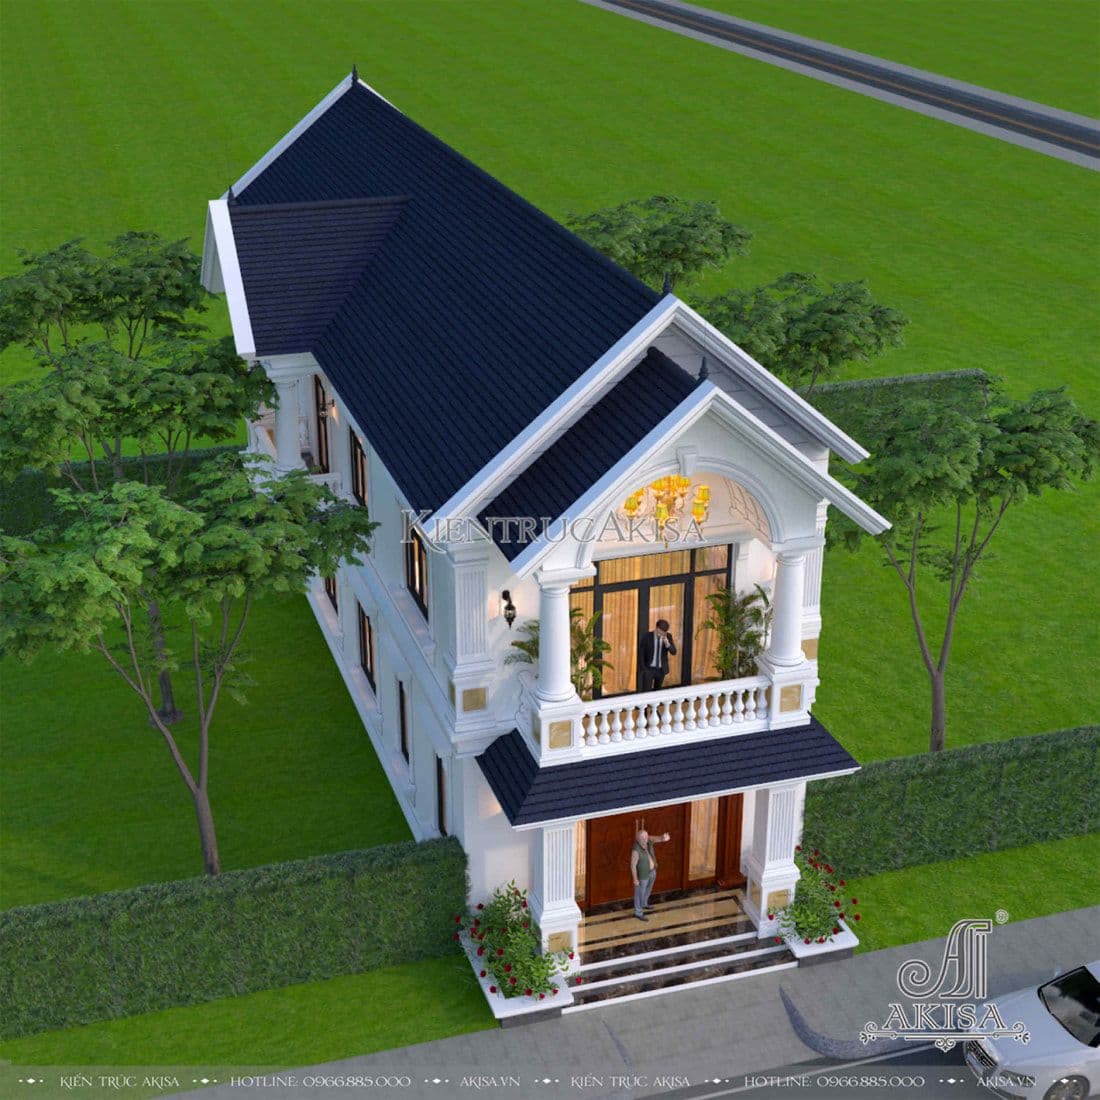 Hệ mái Thái dốc màu xanh than lịch lãm, được thiết kế linh hoạt theo hình khối kiến trúc của ngôi nhà tạo nên một tổng thể sang trọng, thu hút